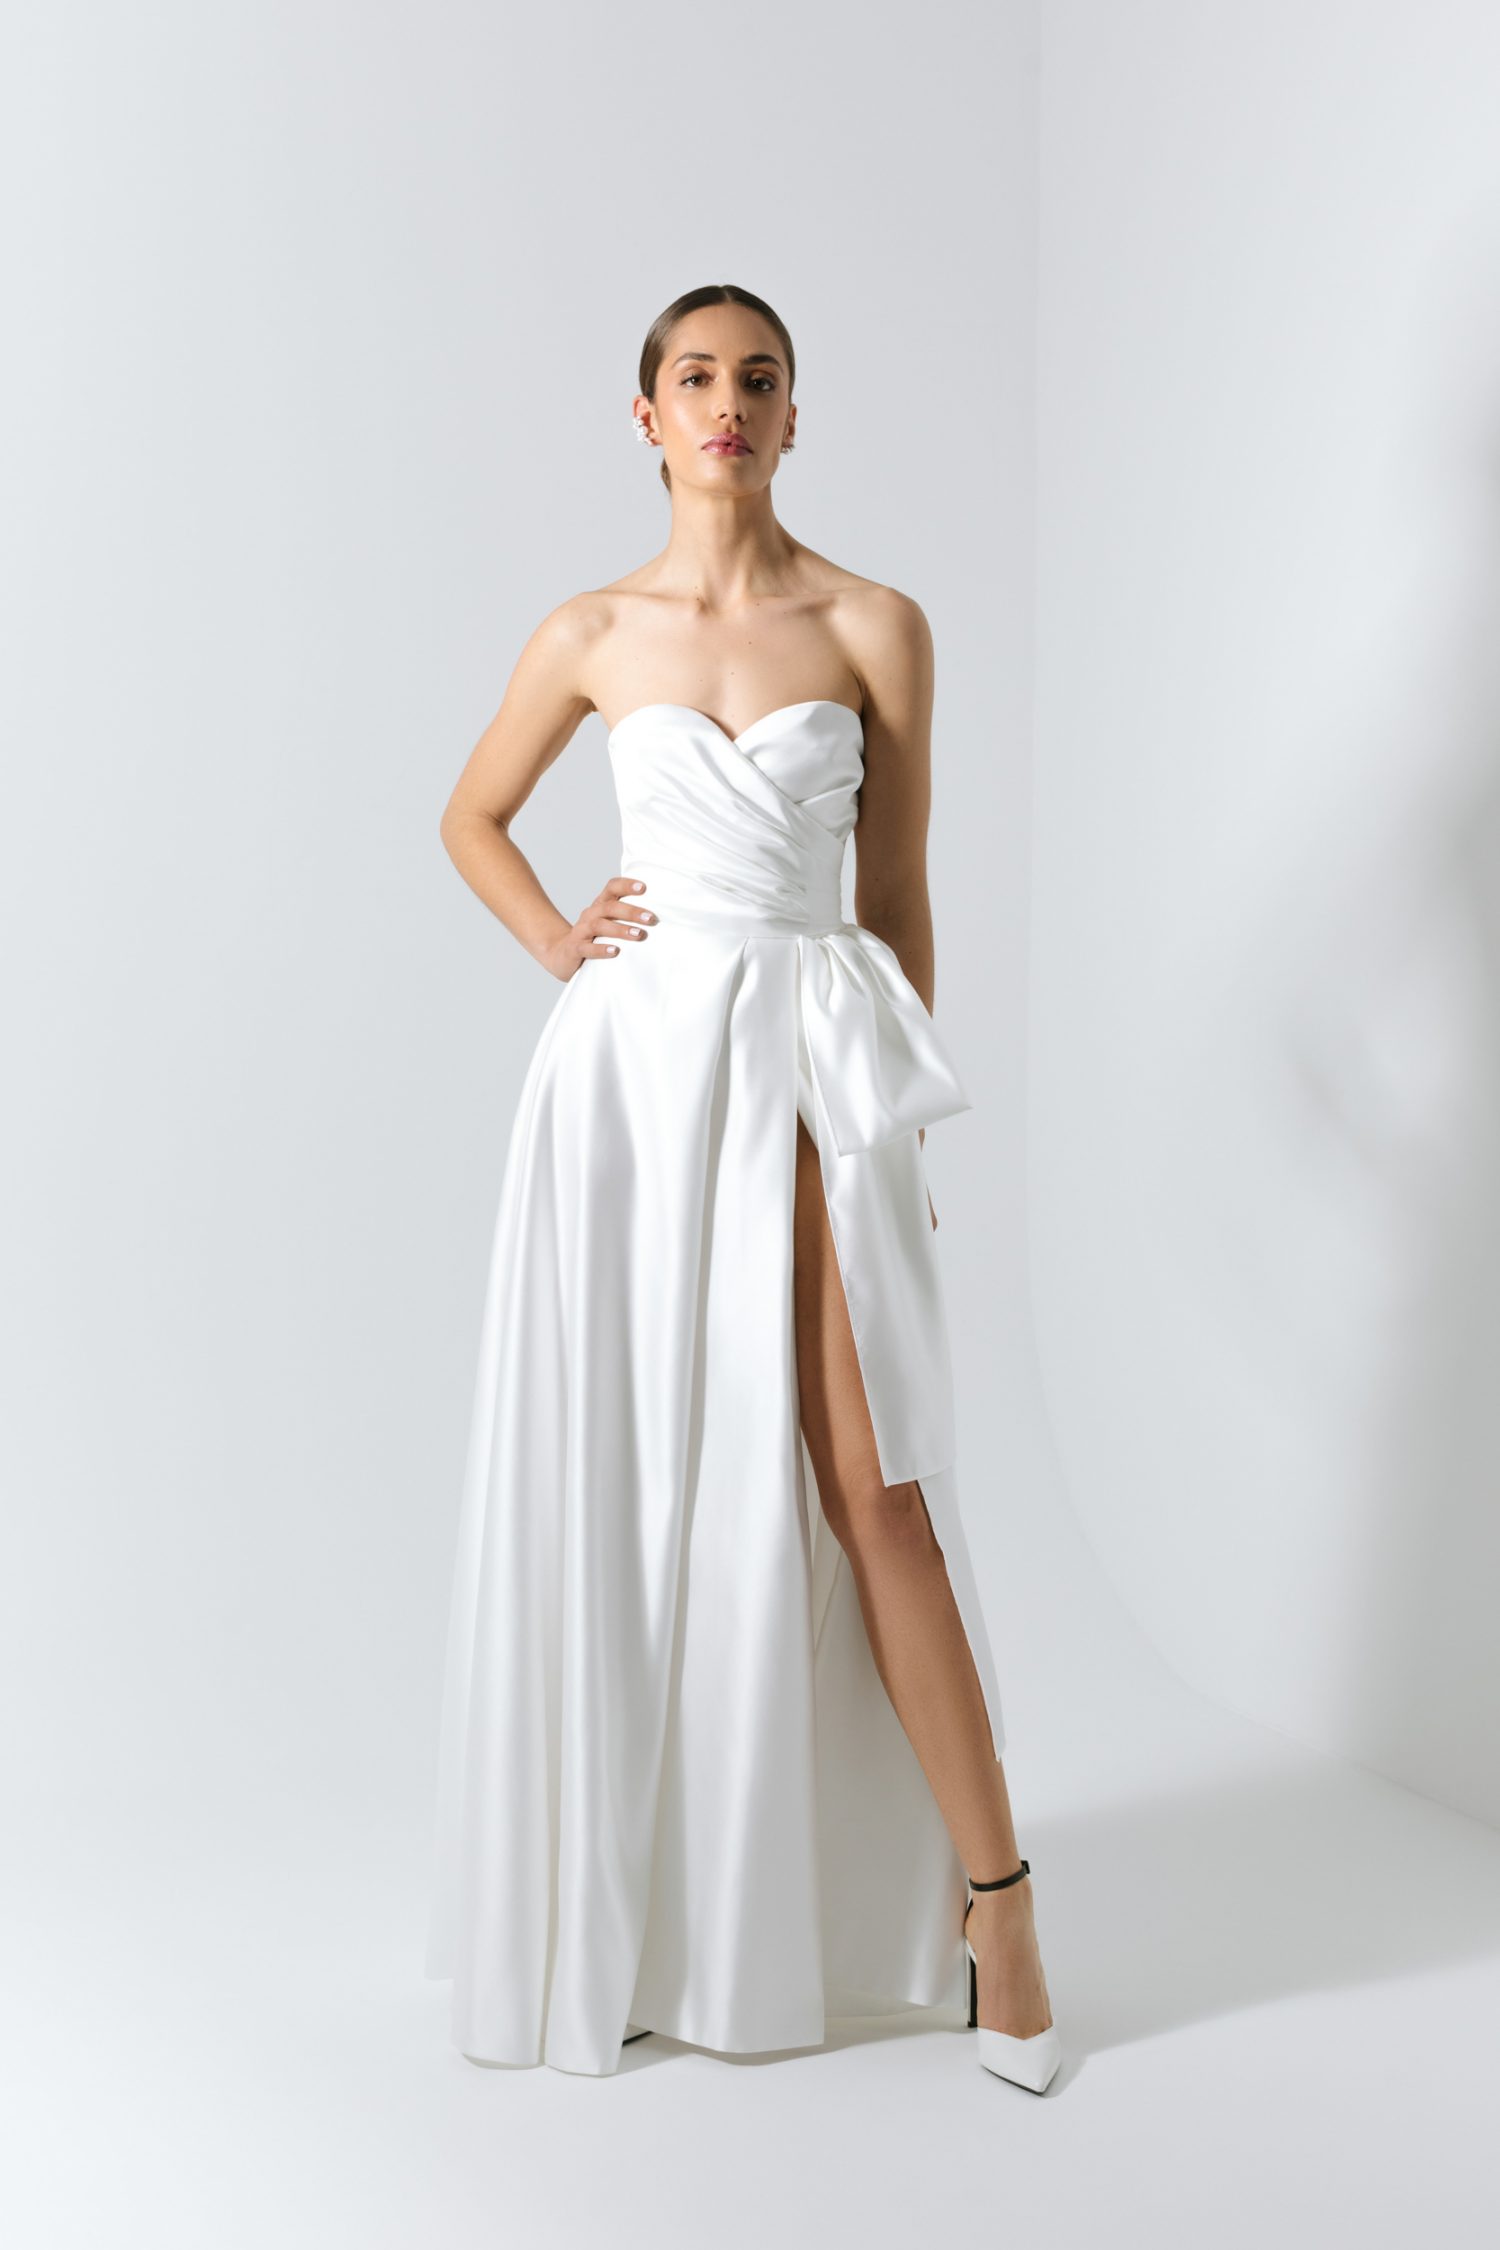 Vestido de noiva branco com corte princesa, com decote coração e laço.